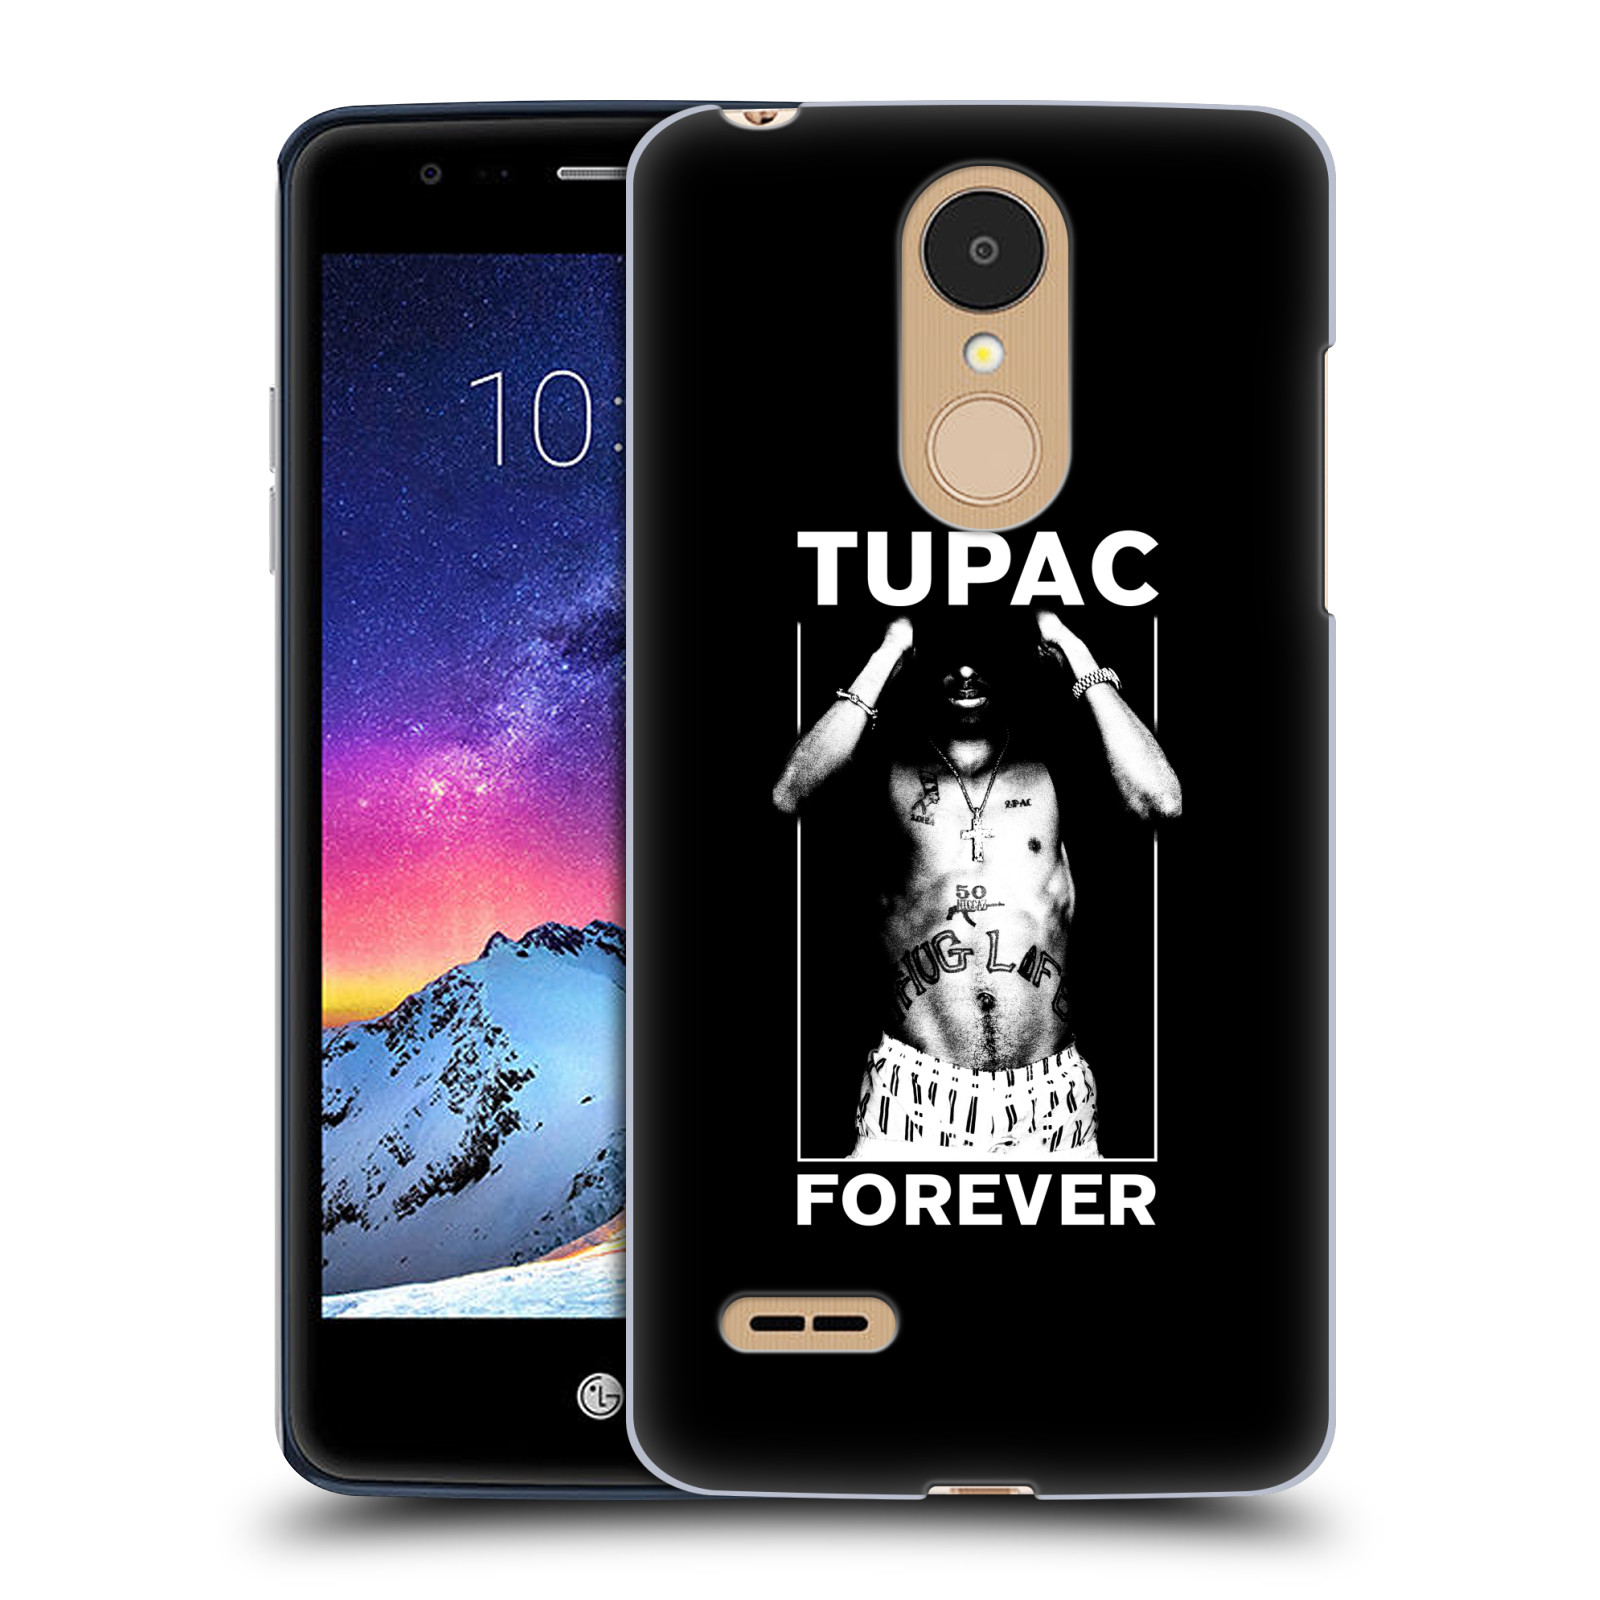 HEAD CASE plastový obal na mobil LG K9 / K8 2018 Zpěvák rapper Tupac Shakur 2Pac bílý popisek FOREVER